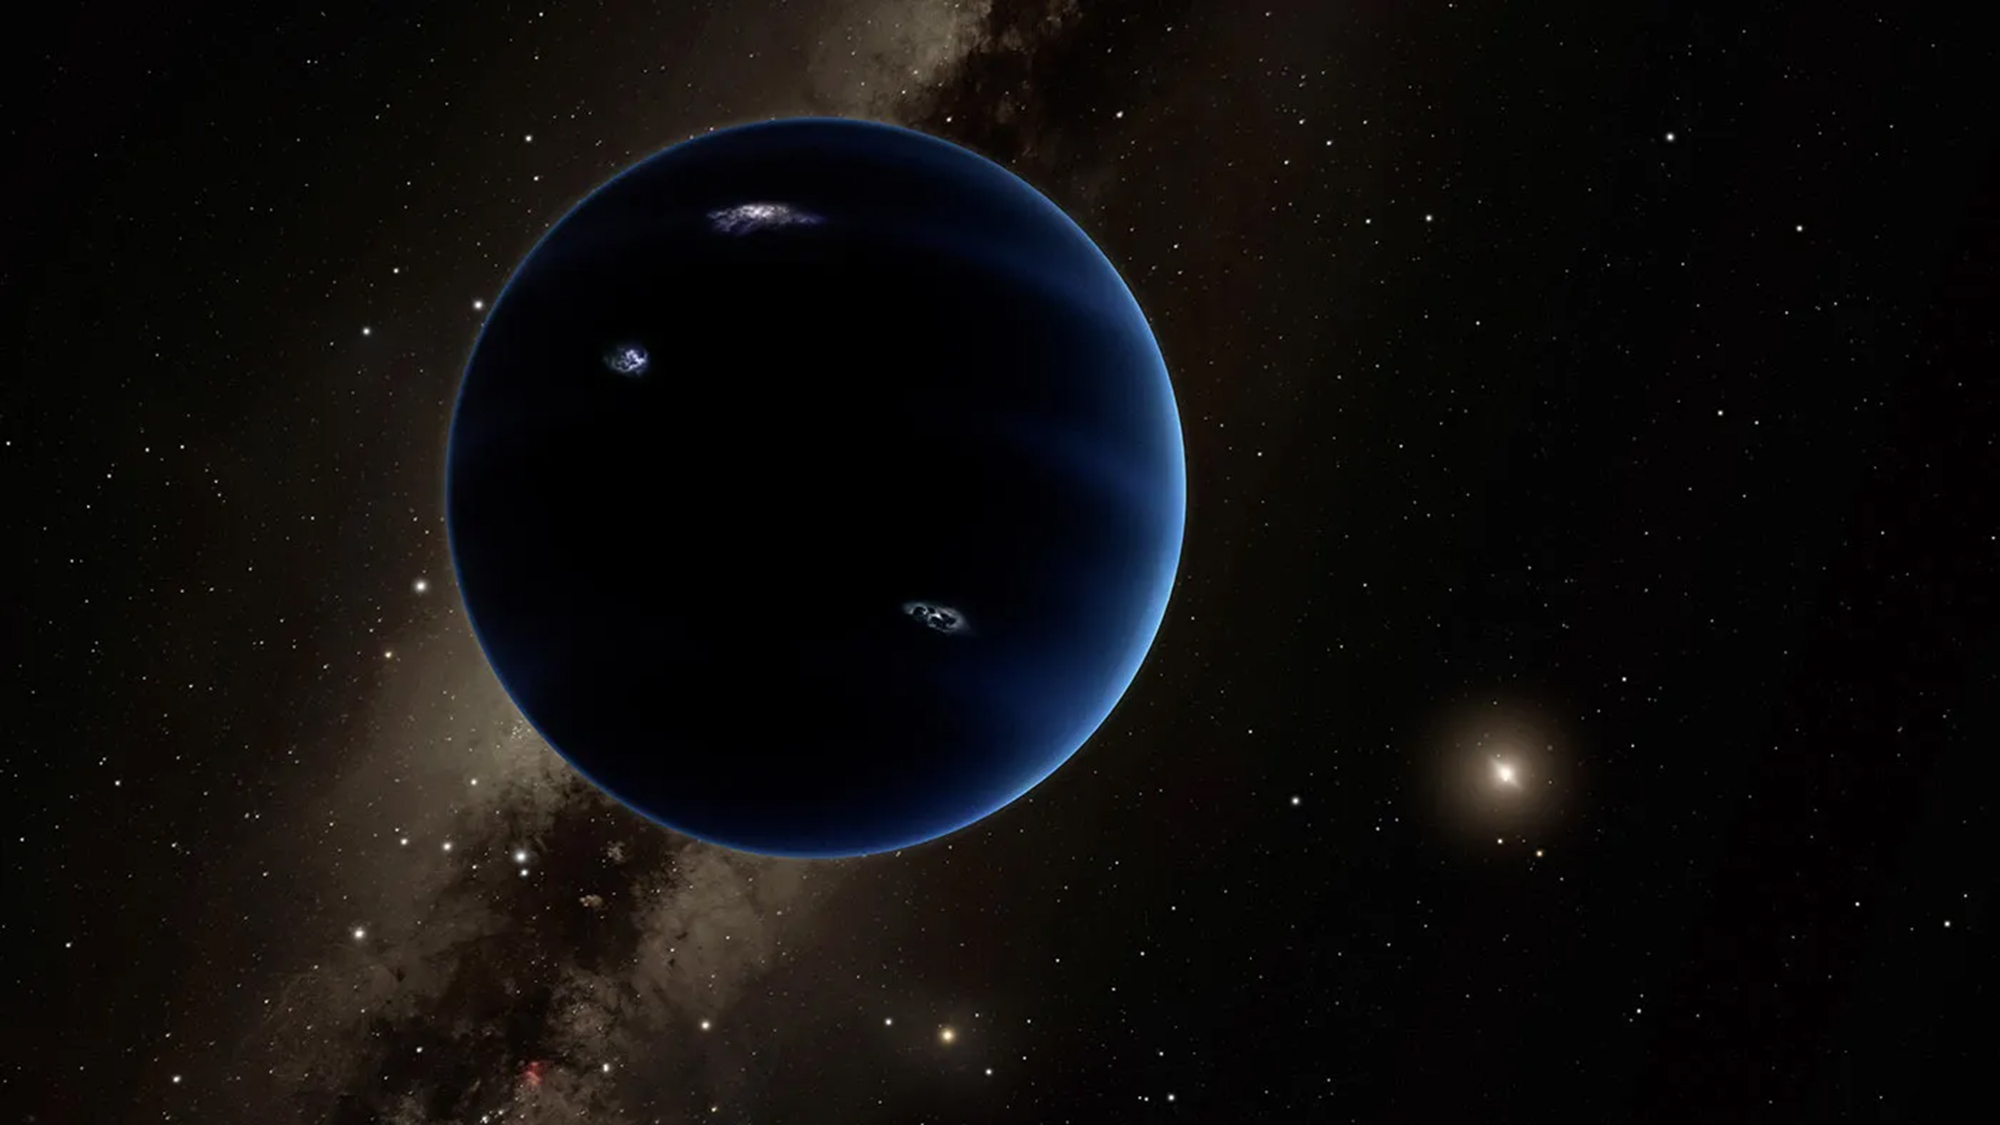 Los astrónomos aún no han decidido si el Planeta 9 es real